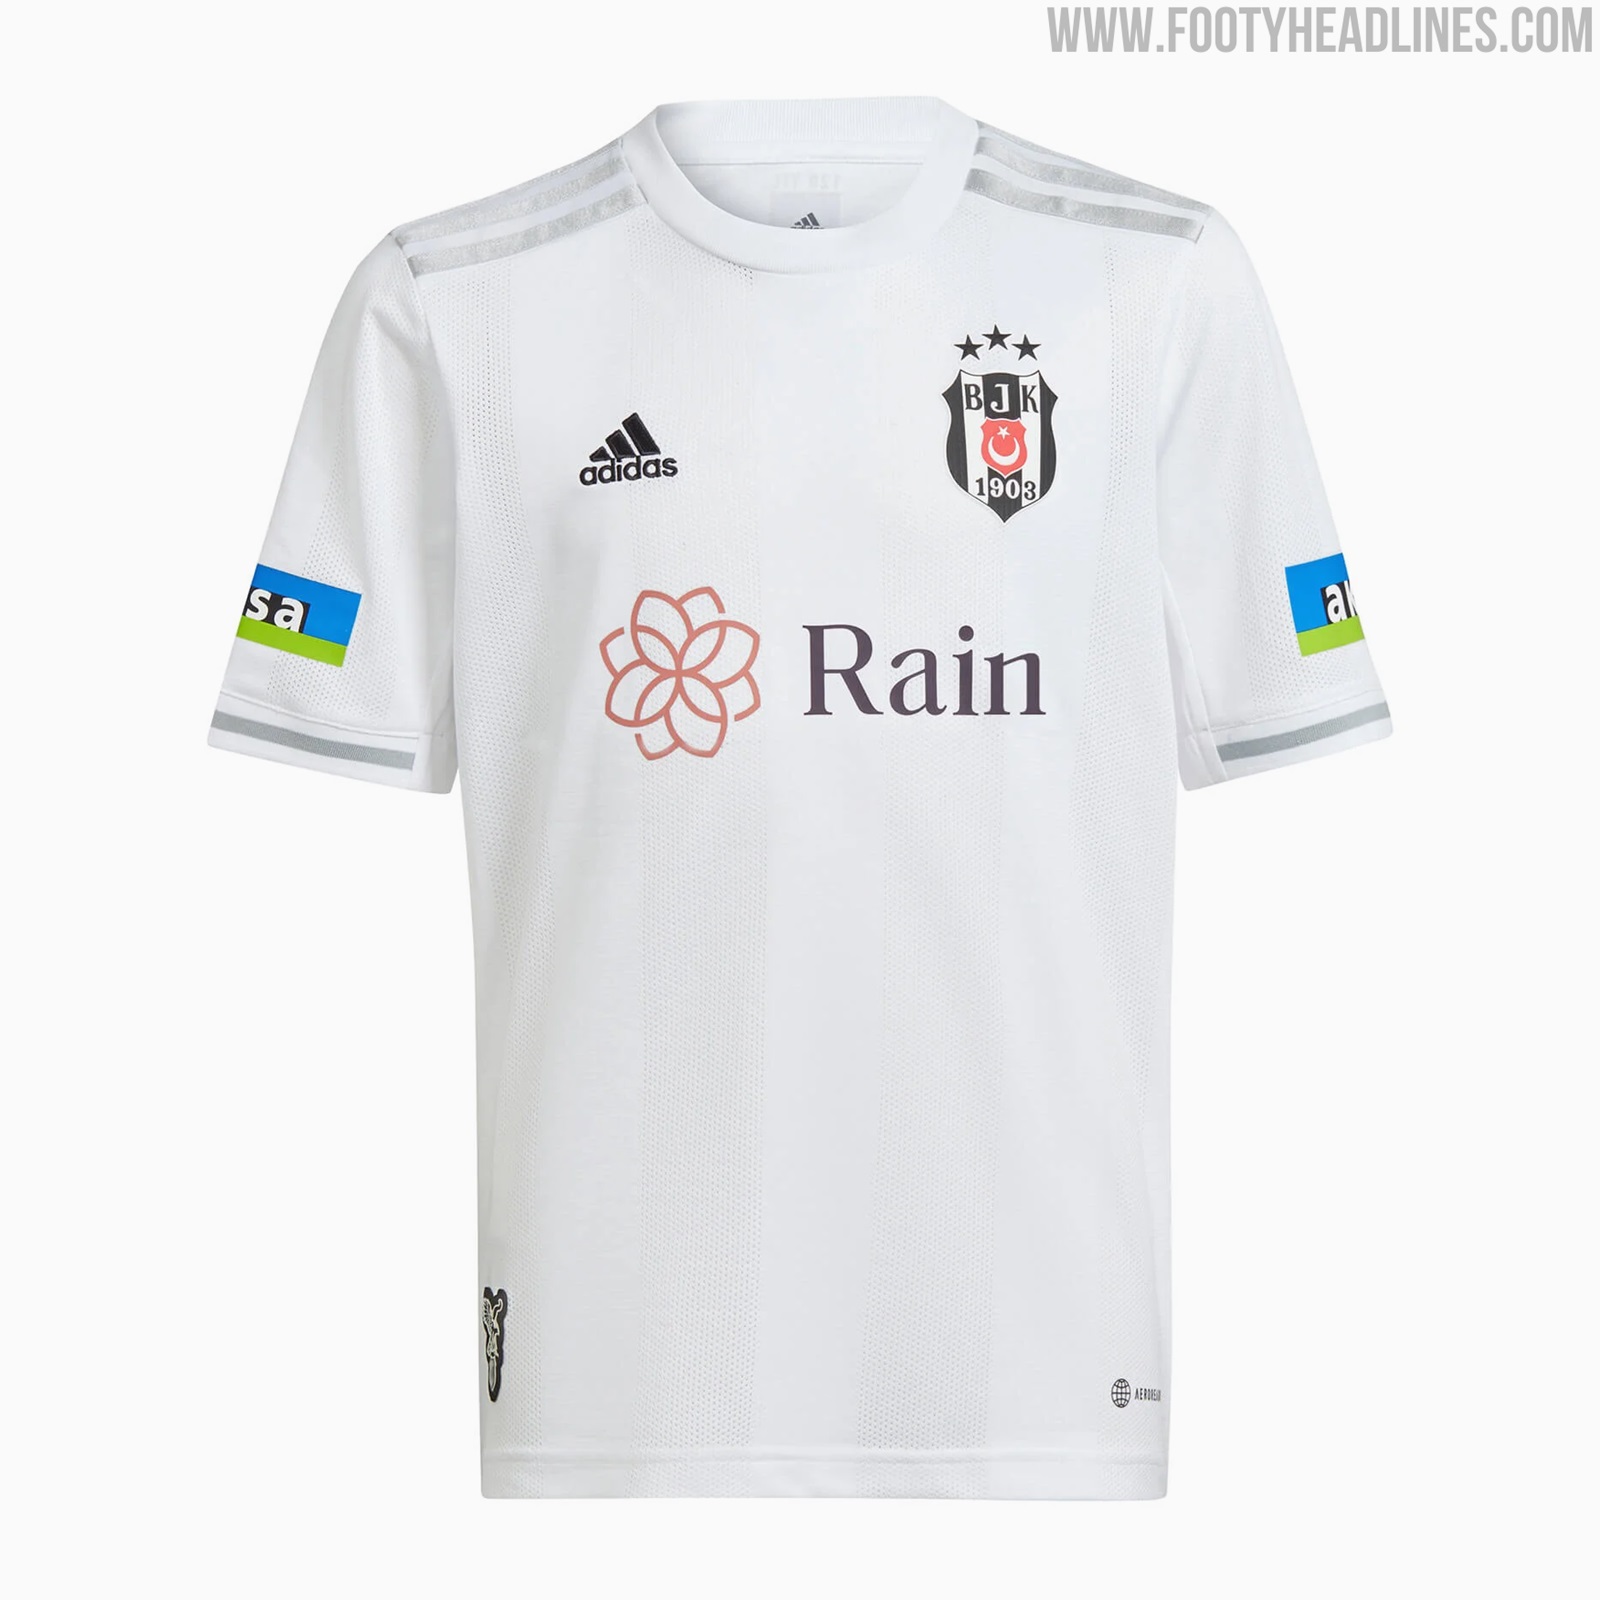 Beşiktaş JK 2021/22 adidas Kits - FOOTBALL FASHION